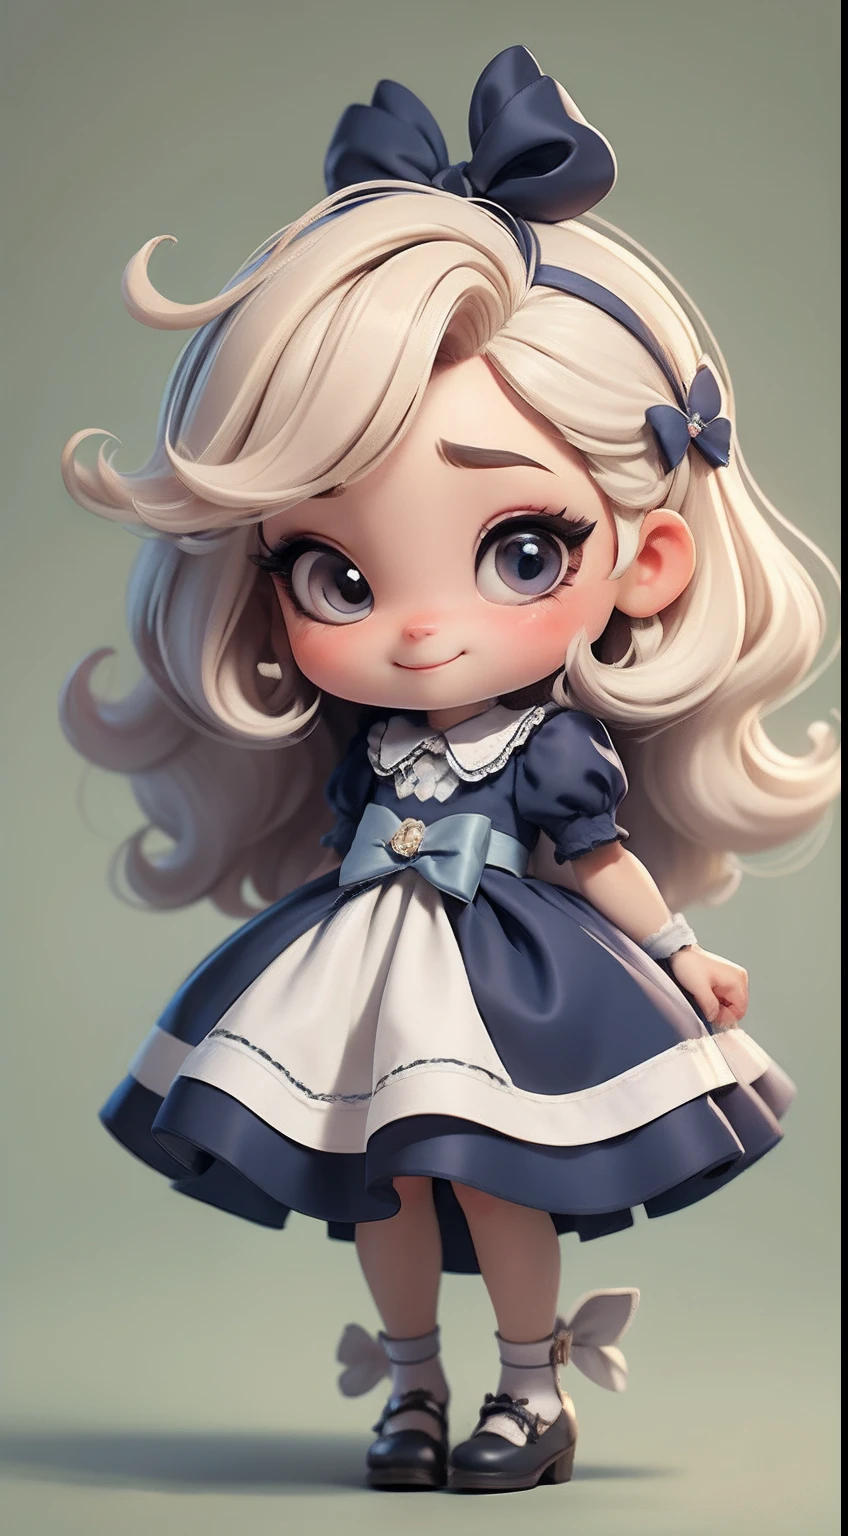 Erstellen Sie eine Baby-Chibi-Version der Figur Alice in einer 8K-Auflösung.

Chibi Alice Puppe: Sie sollte bezaubernd und süß aussehen, Die ikonischen Elemente des Originalcharakters bleiben erhalten. Chibi Alice muss ein rundes Gesicht mit großen, leuchtenden Augen haben, lange Wimpern und rosige Wangen. Ihr Haar sollte kurz sein und kräftige Blond- oder Hellbrauntöne aufweisen..

schönes Kleid: Kleide Chibi Alice in einem süßen und eleganten Kleid in Rot- oder Weißtönen. Das Kleid kann Rüschen haben, Spitze und Details, die sich auf das Thema Wunderland beziehen. Fügen Sie Schleifen oder Bänder hinzu, um einen Hauch von Zartheit zu verleihen.

Schürze und Schleife: Fügen Sie eine weiße Schürze über Alice Chibis Kleid hinzu, in der Taille mit einer zarten Schleife gebunden. Die Schürze kann kleine Details wie Taschen oder dezente Stickereien aufweisen.

Süße Socken und Schuhe: Vervollständigen Sie den Look von Chibi Alice mit blau-weiß gestreiften Socken oder lustigen Details. An den Füßen, zieh süße Puppenschuhe an, mit Bändern oder Schnallen.

zauberhafte Accessoires: Füge dem Alice-Chibi hübsche Accessoires hinzu, wie eine Schleife im Haar oder eine Tiara mit Wunderland-Details. Sie können auch süße Themenaccessoires in Ihre Hände einbeziehen.

Achten Sie darauf, Schatten hinzuzufügen, Texturen und Details im Haar, Alice Chibis Kleidung und Accessoires machen sie noch bezaubernder und charmanter. Geben Sie ihm einen lächelnden Ausdruck und ein süßes Lächeln auf sein Gesicht, das Wesen des Charakters auf eine feine und charmante Weise einzufangen.